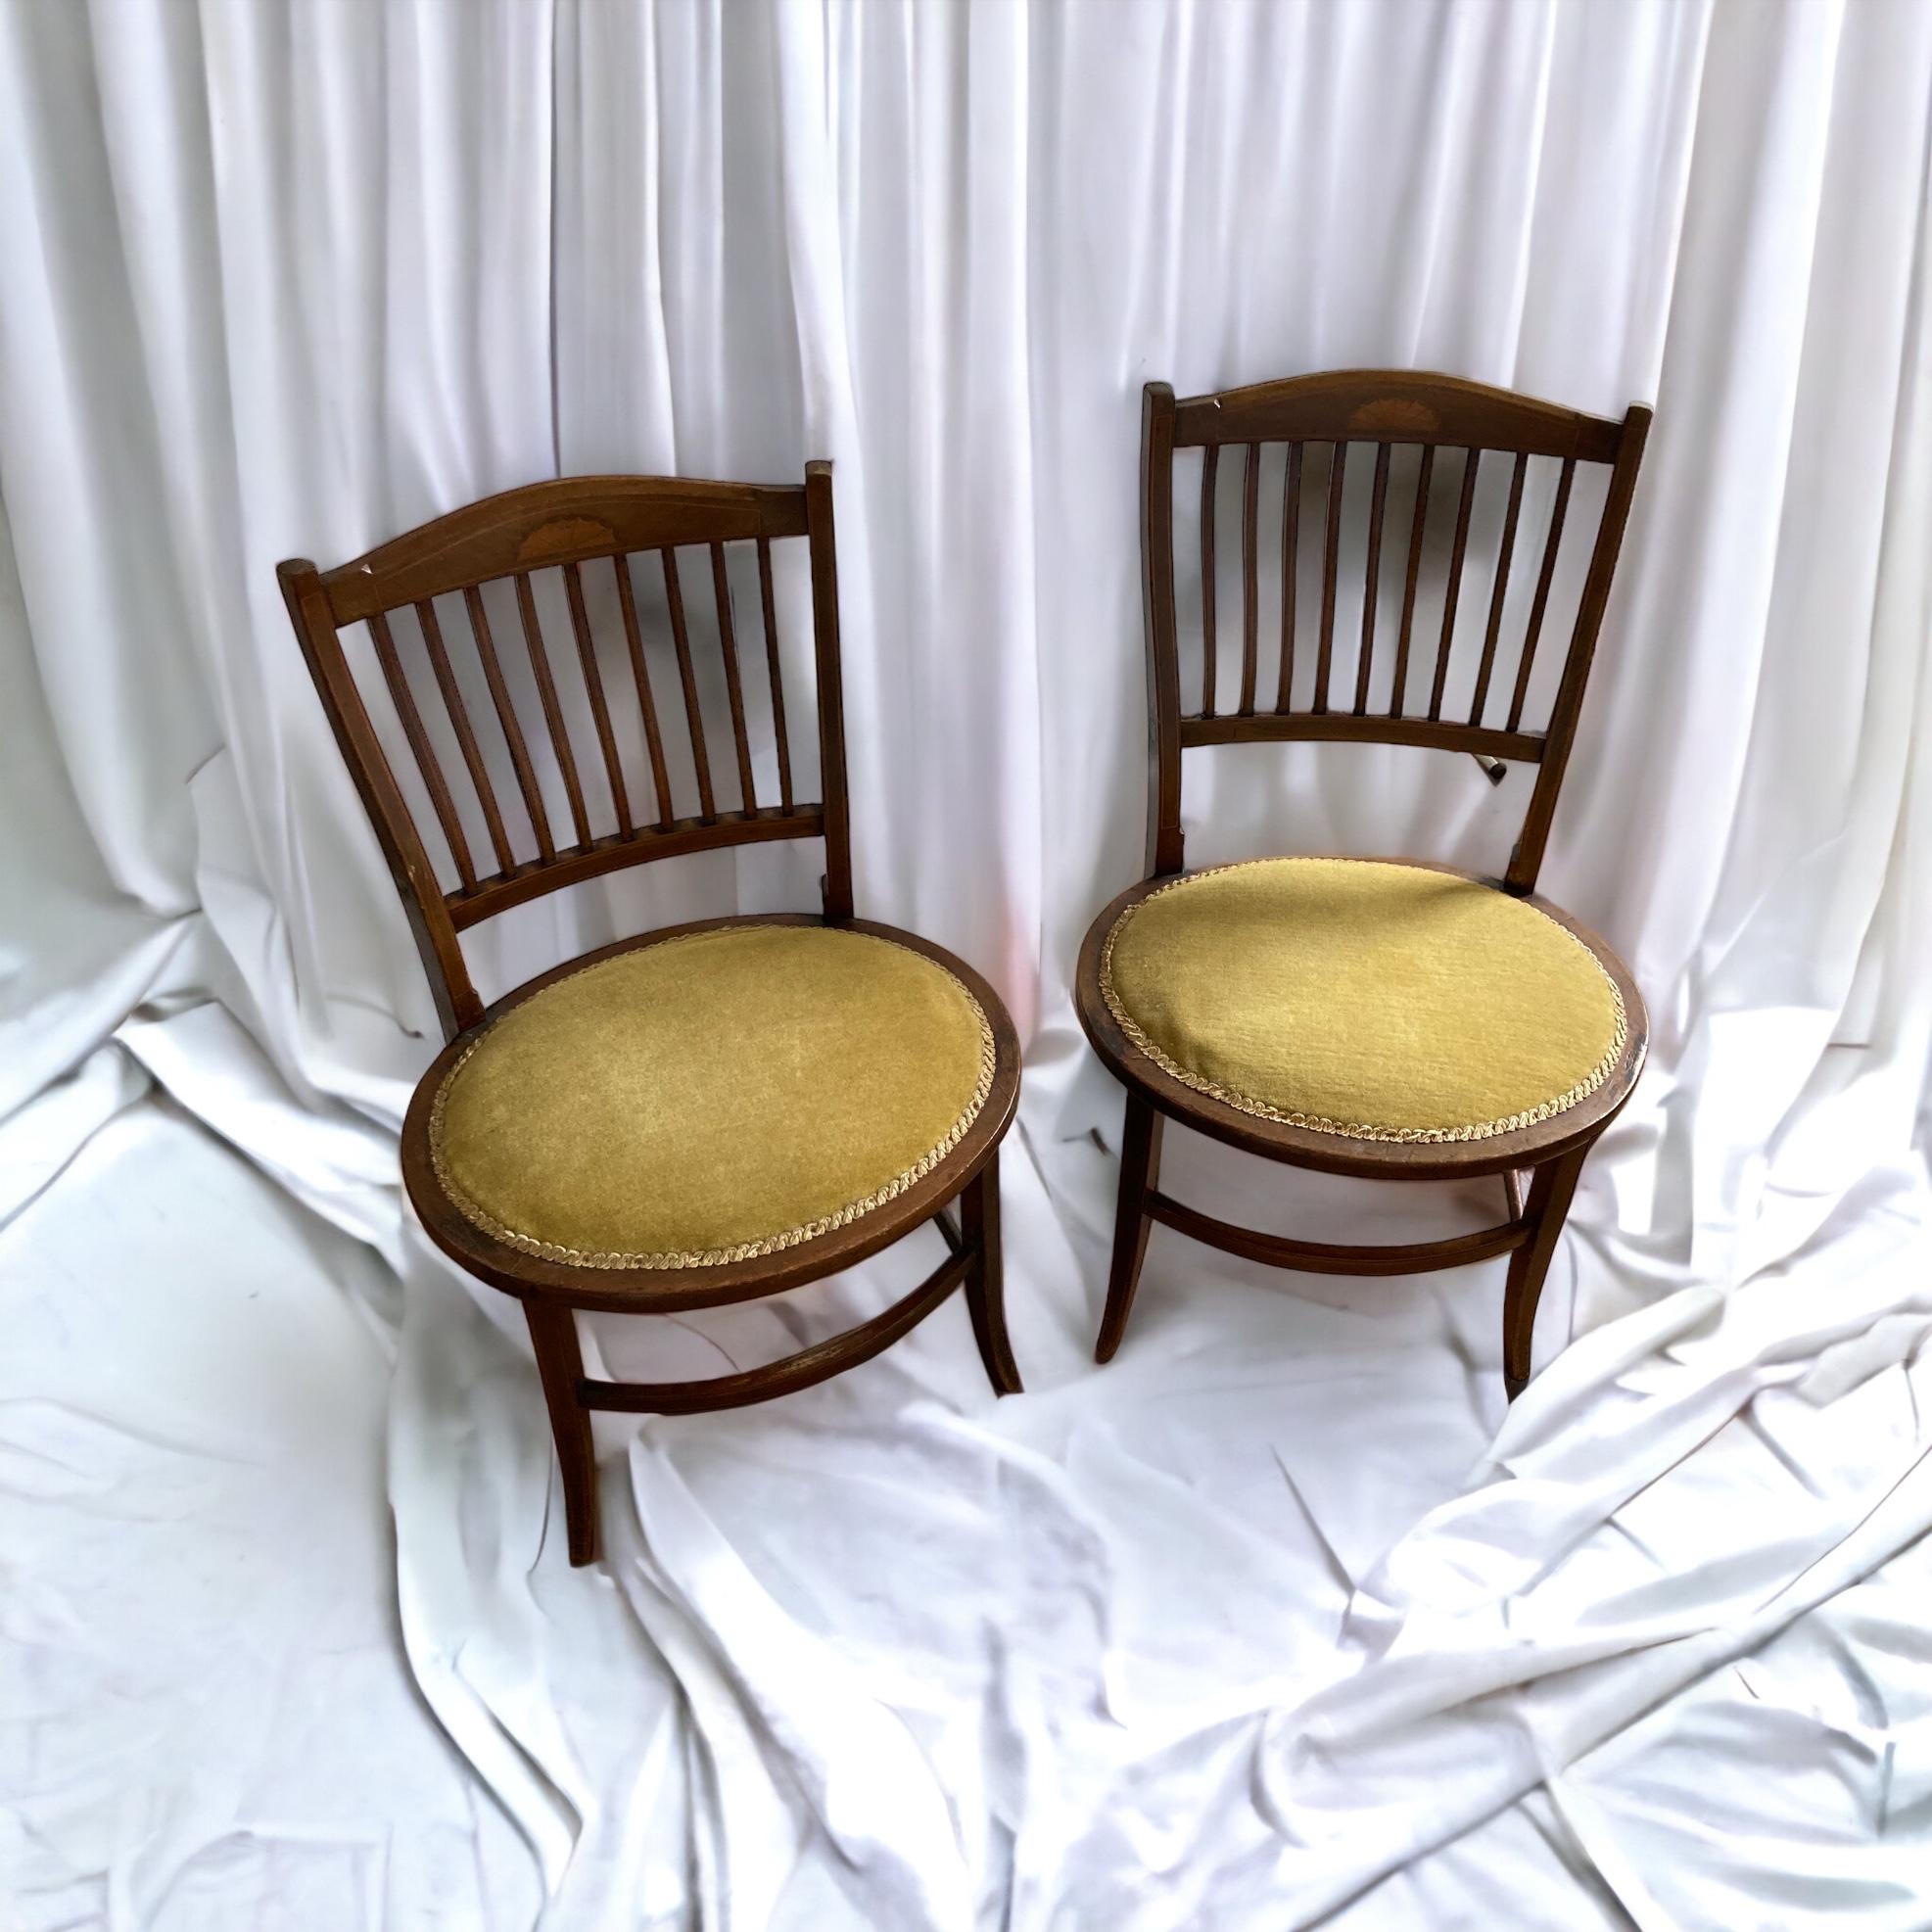 Paire de chaises d'entrée et de chaises latérales en acajou ancien de l'époque édouardienne, à base ovale. Sellerie d'origine en vert olive.

Bon état

H : 76 cm

L : 52 cm

Assise H : 37 cm

D : 44 cm